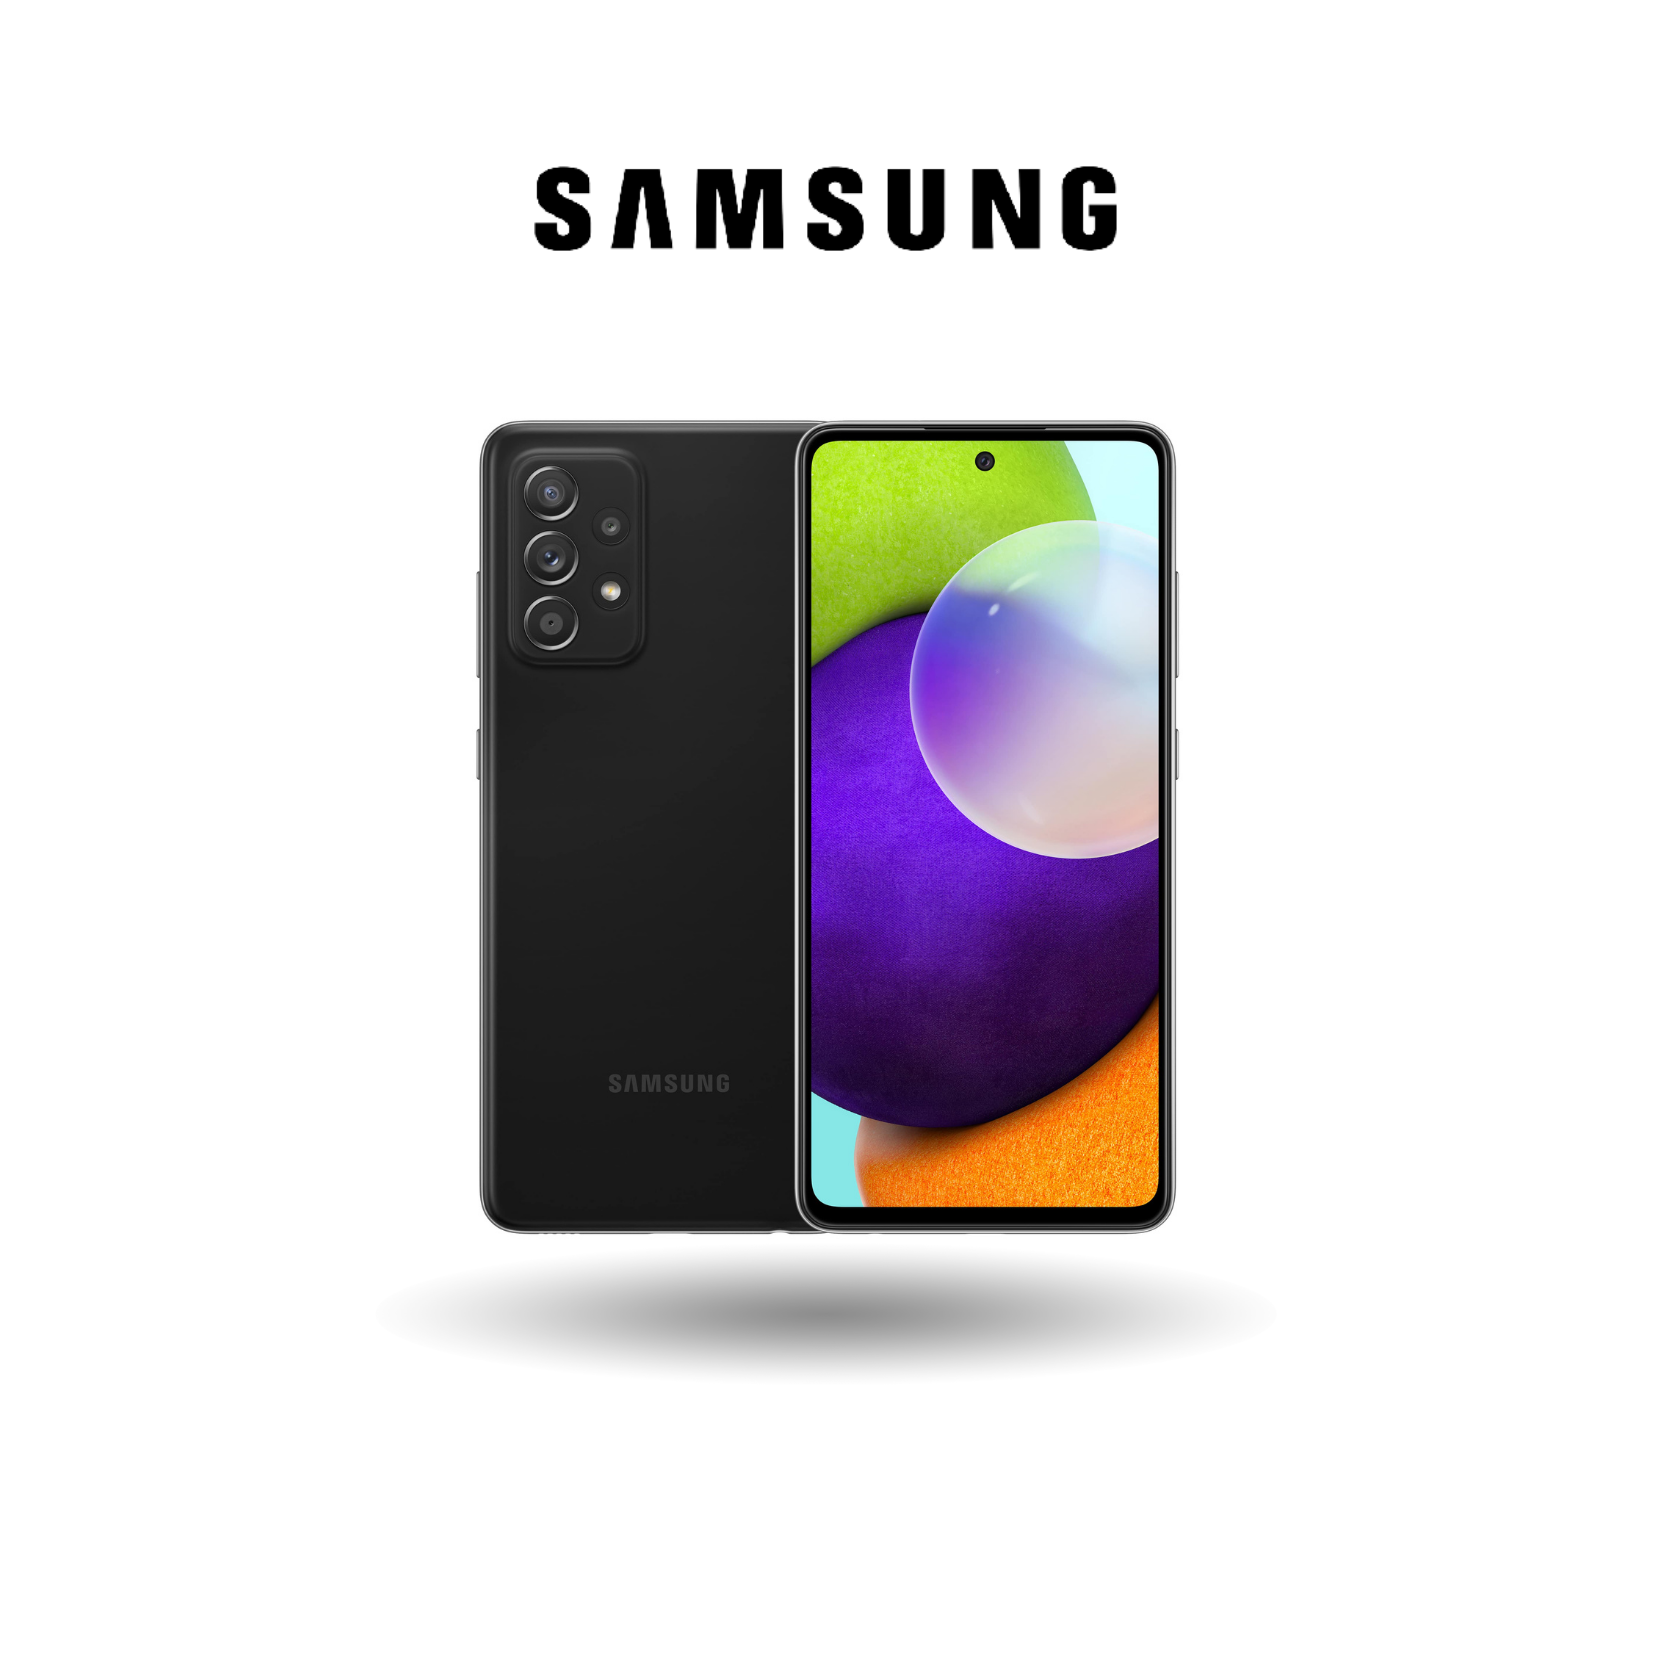 Samsung Galaxy A52 LTE - 8GB RAM + 256GB ROM  Qualcomm Snapdragon 720G  90Hz Refresh Rate